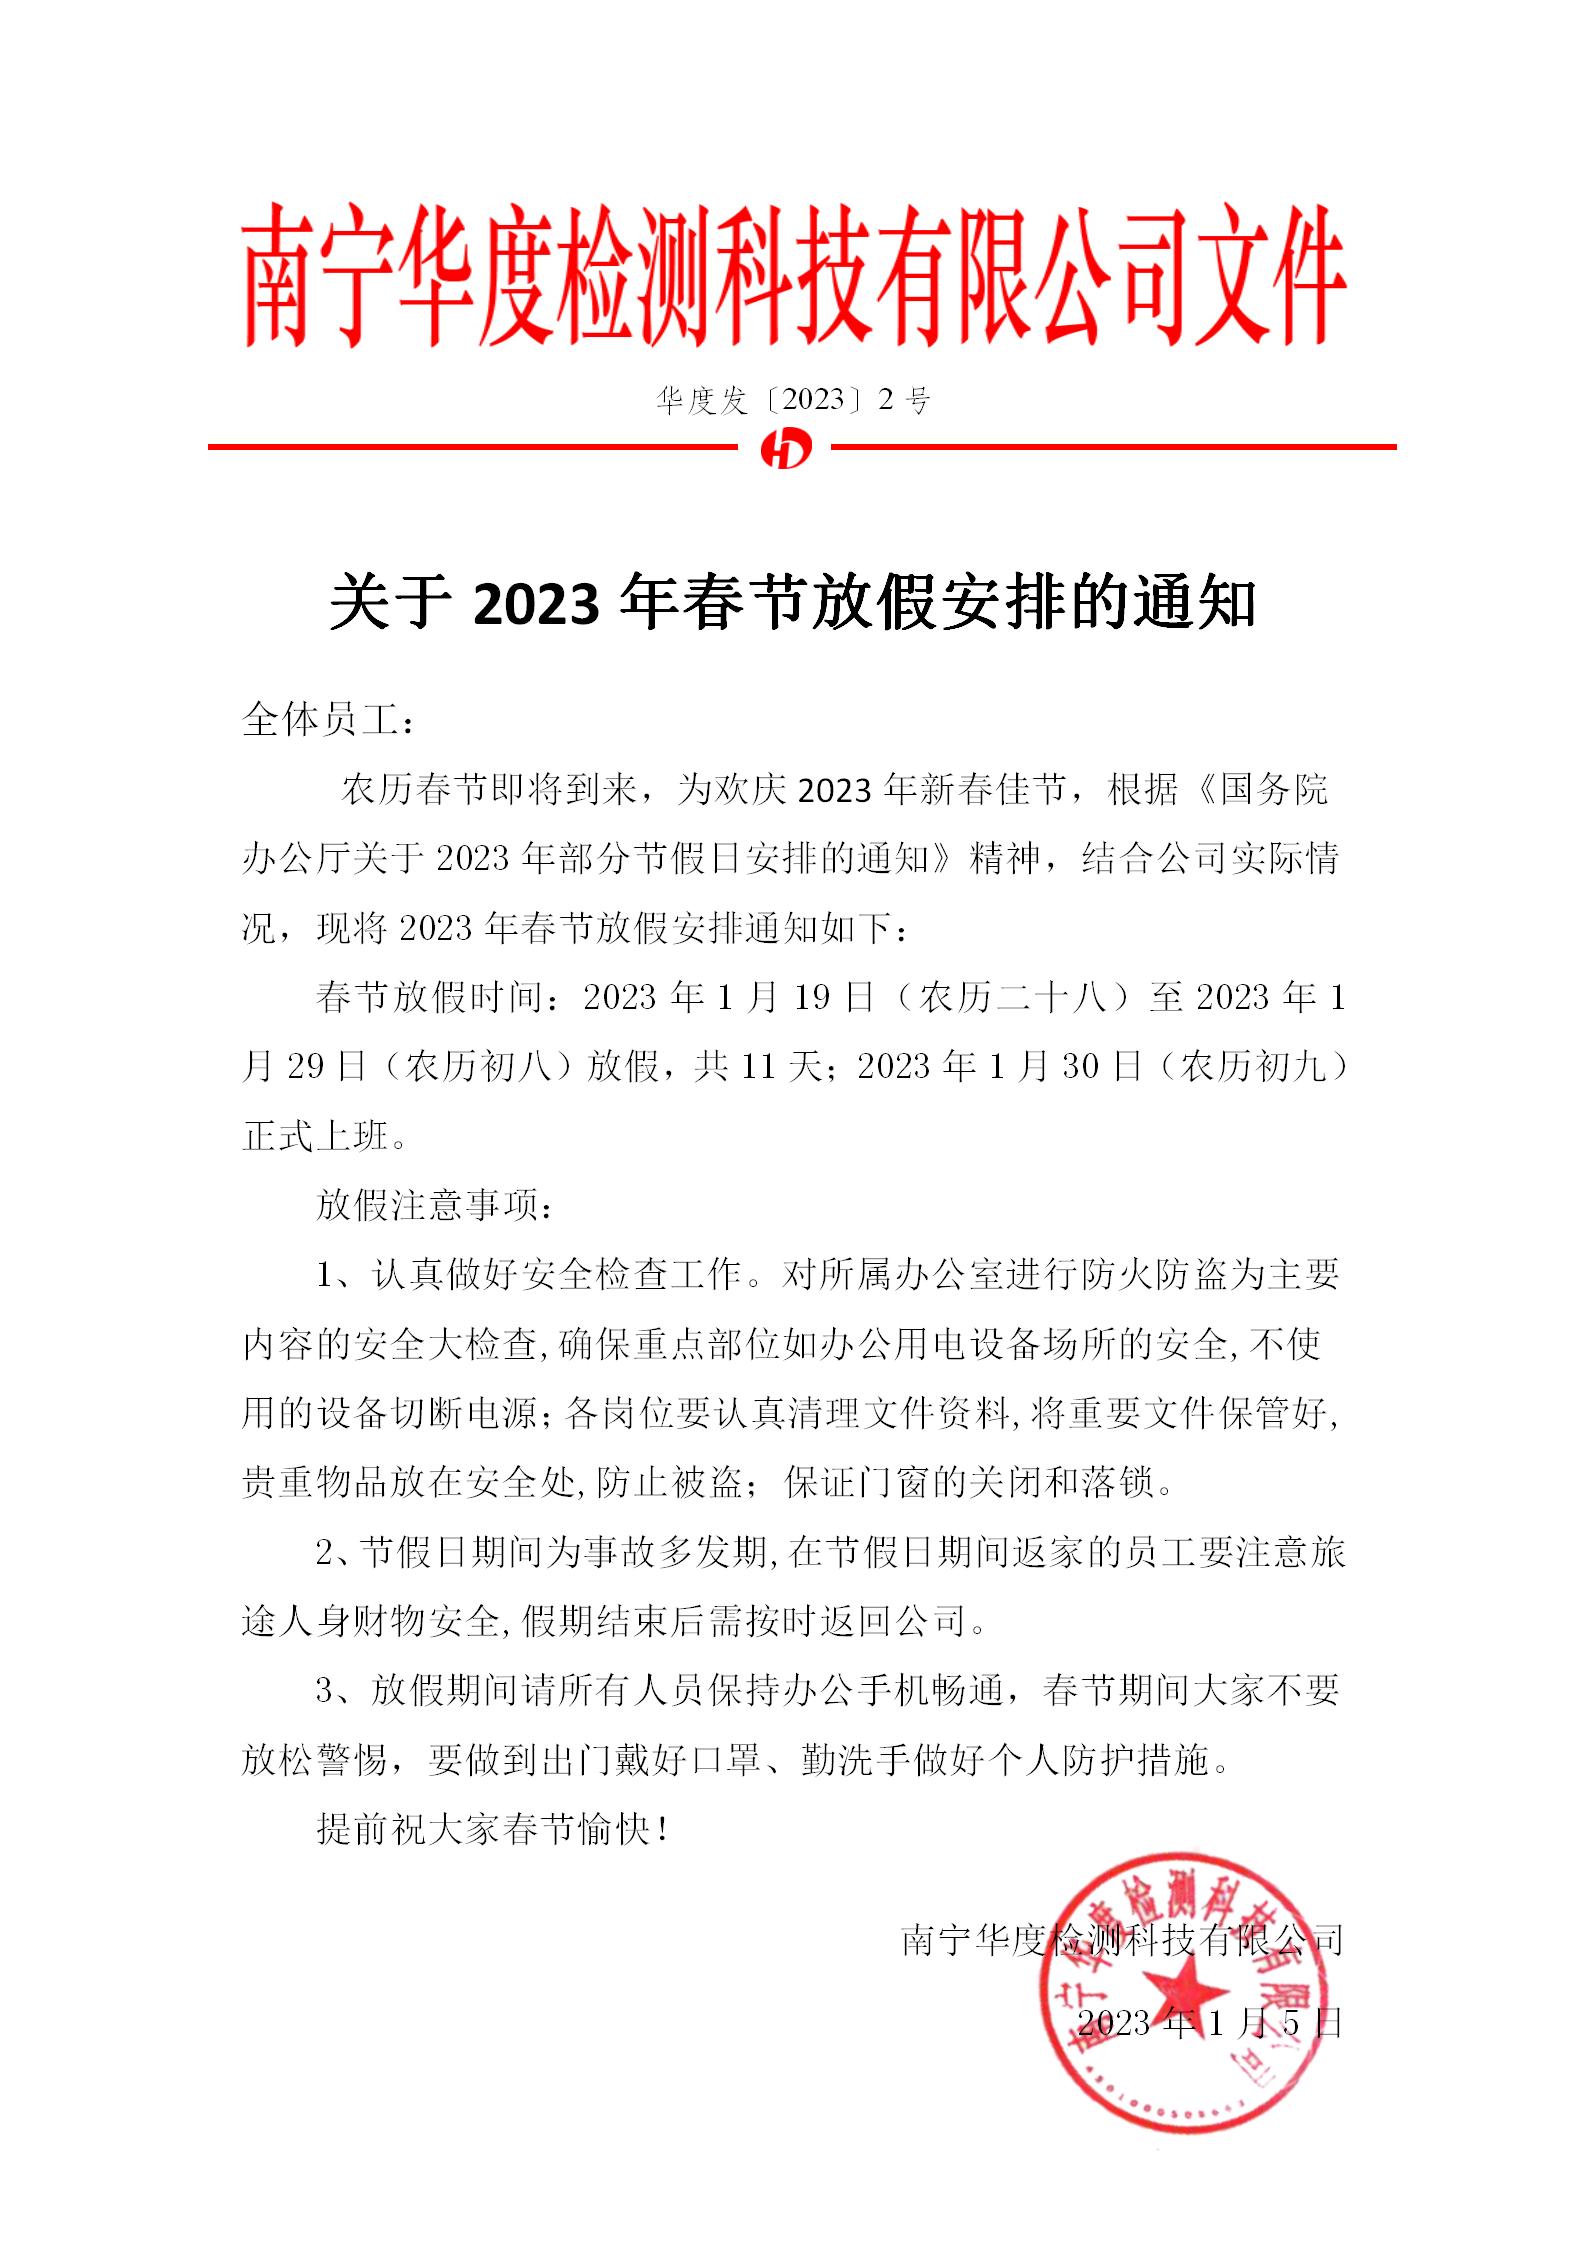 关于2023年春节放假安排的通知